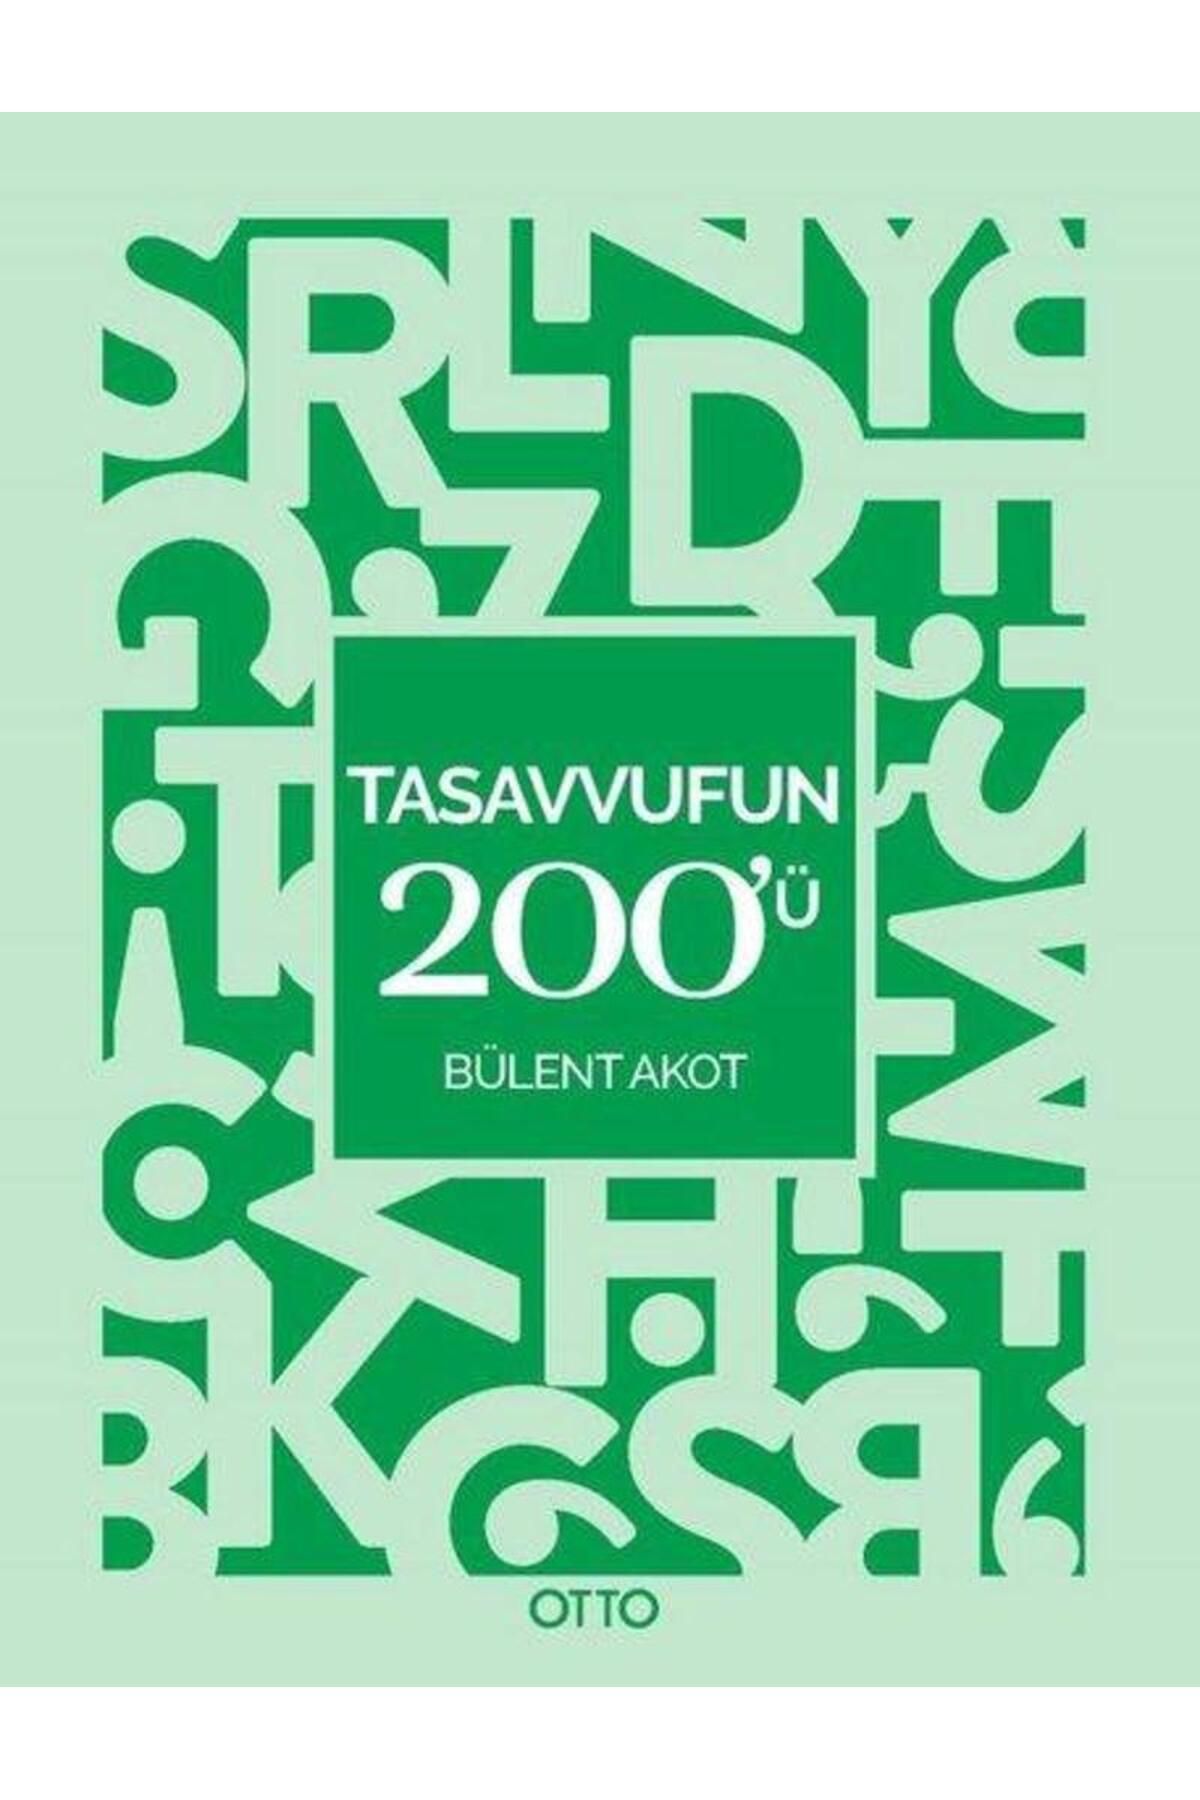 Otto Tasavvuf'un 200'ü